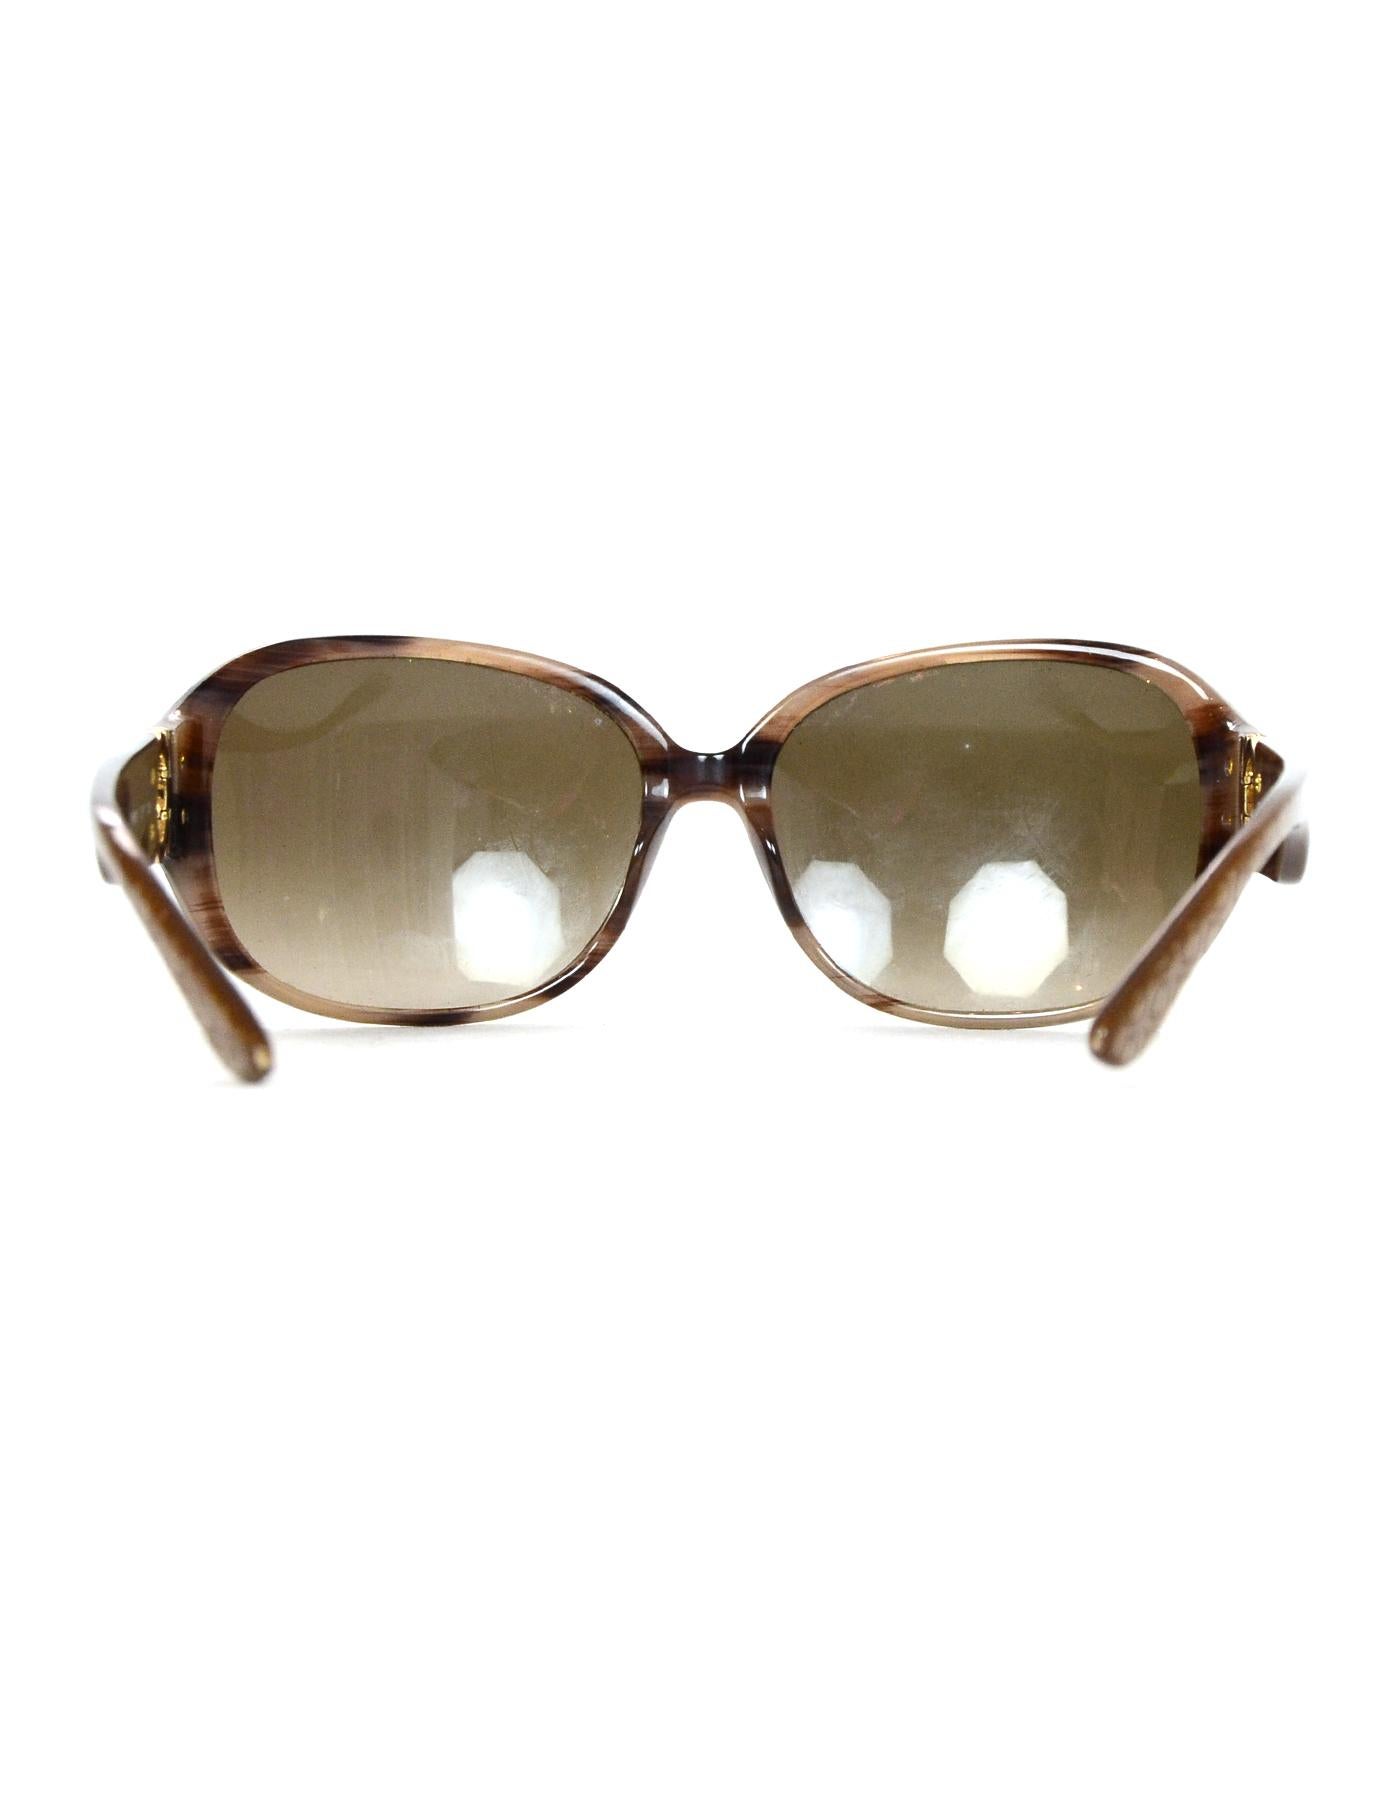 Women's Salvatore Ferragamo Tan Resin Sunglasses Frame W/ Case/Box